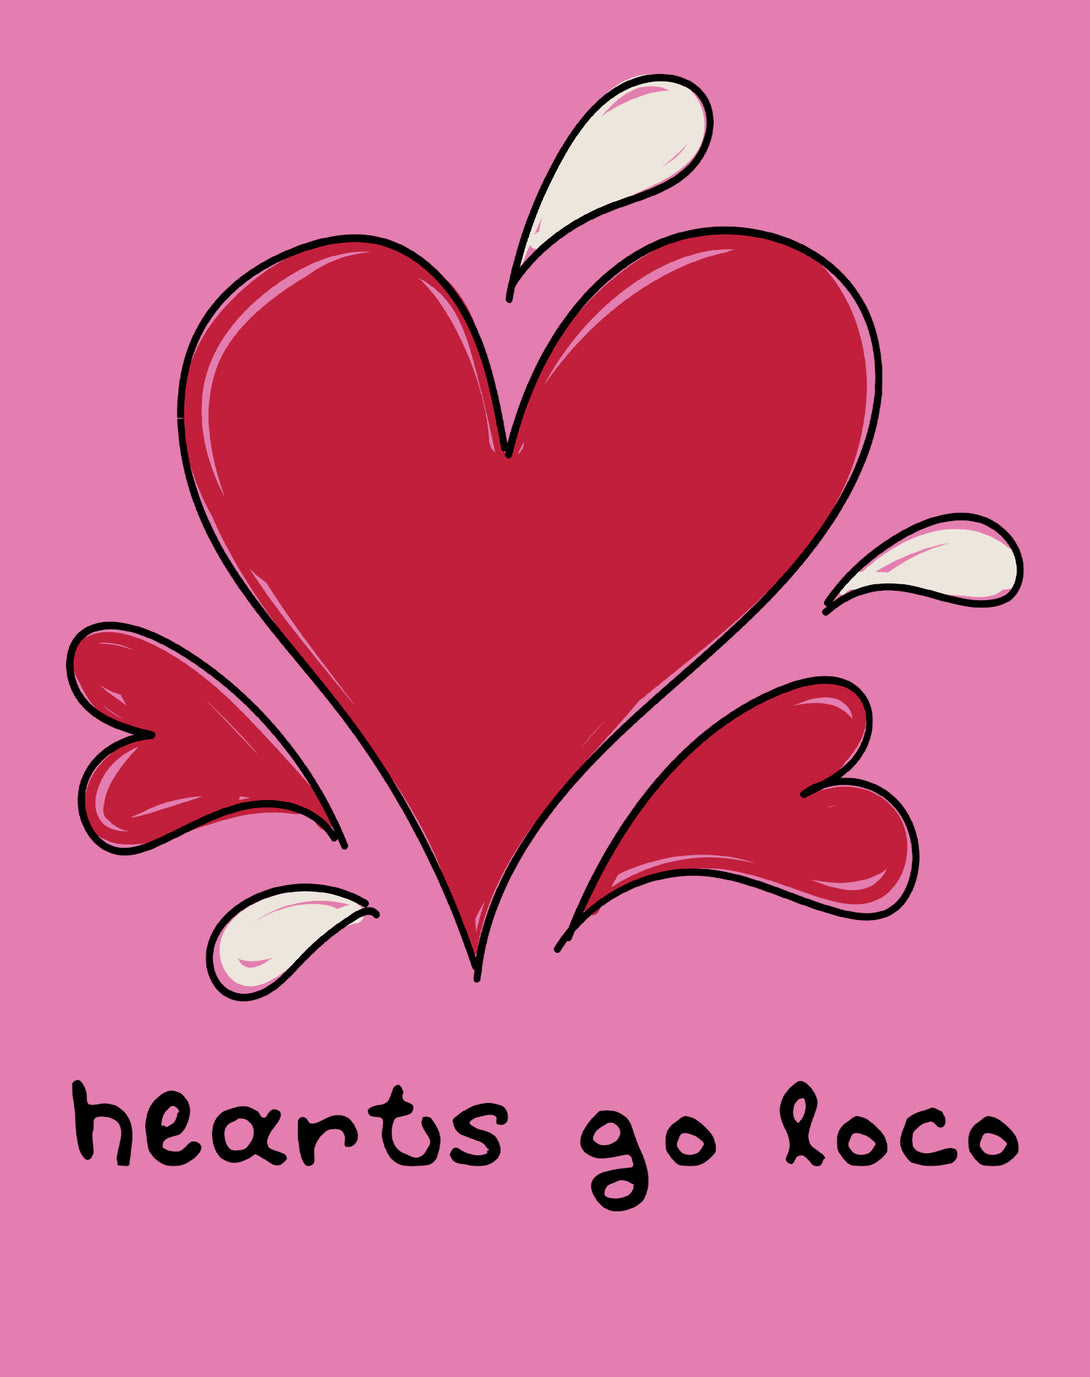 Anti Valentine Hearts Go Loco Women's T-shirt Pink - Urban Species Design Close Up